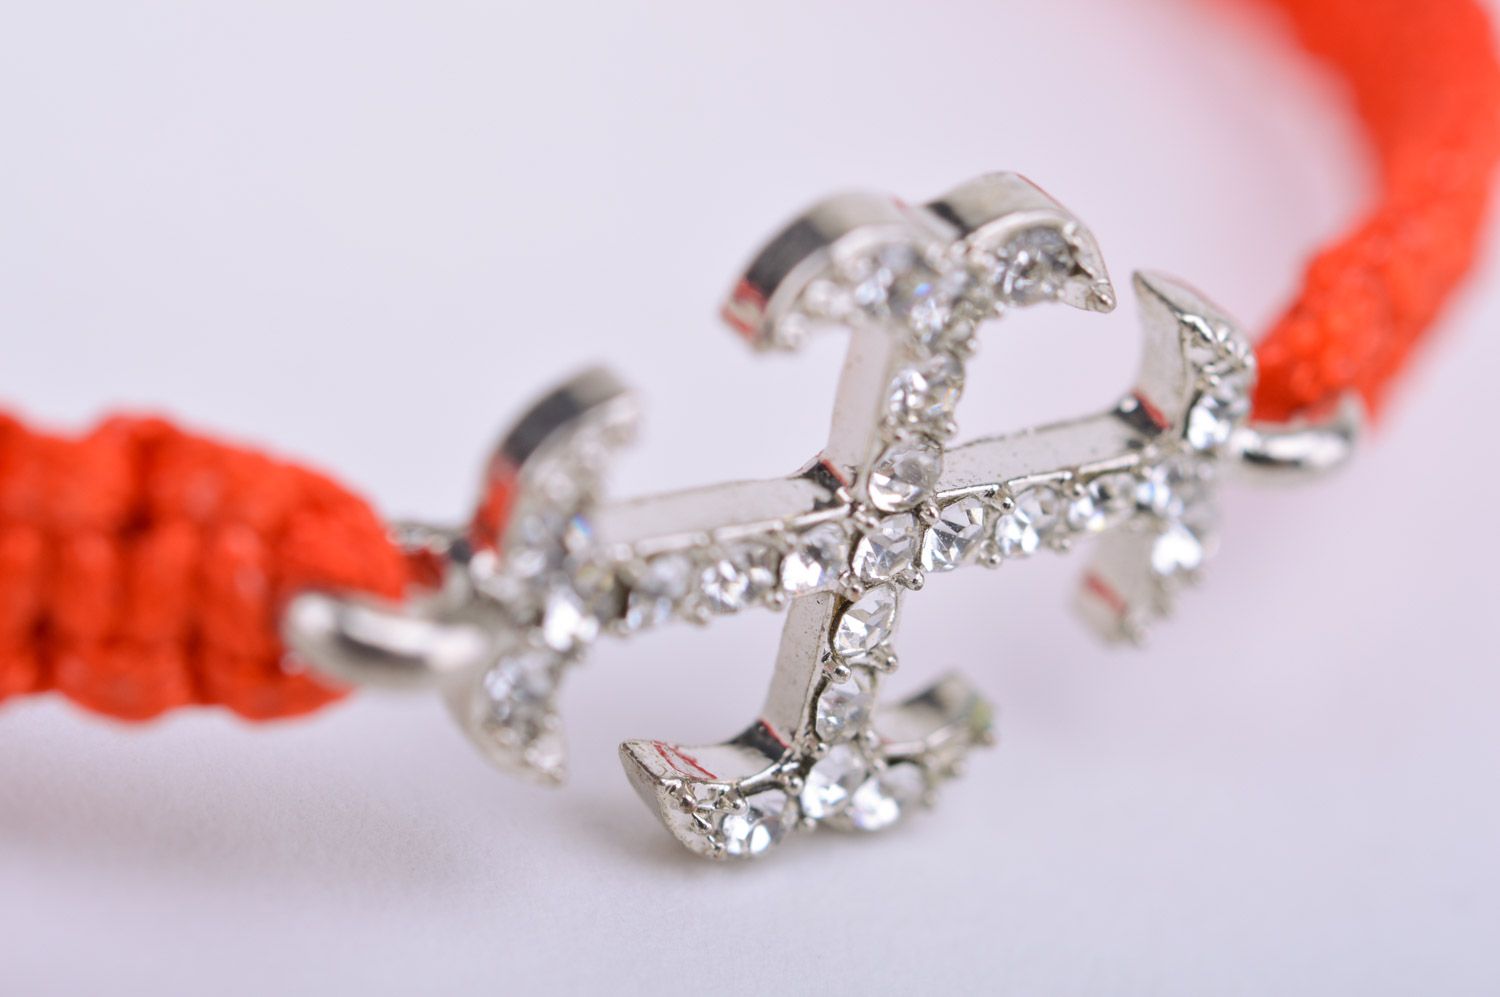 Красный браслет из ниток плетеный вручную с металлической подвеской-крестом фото 4